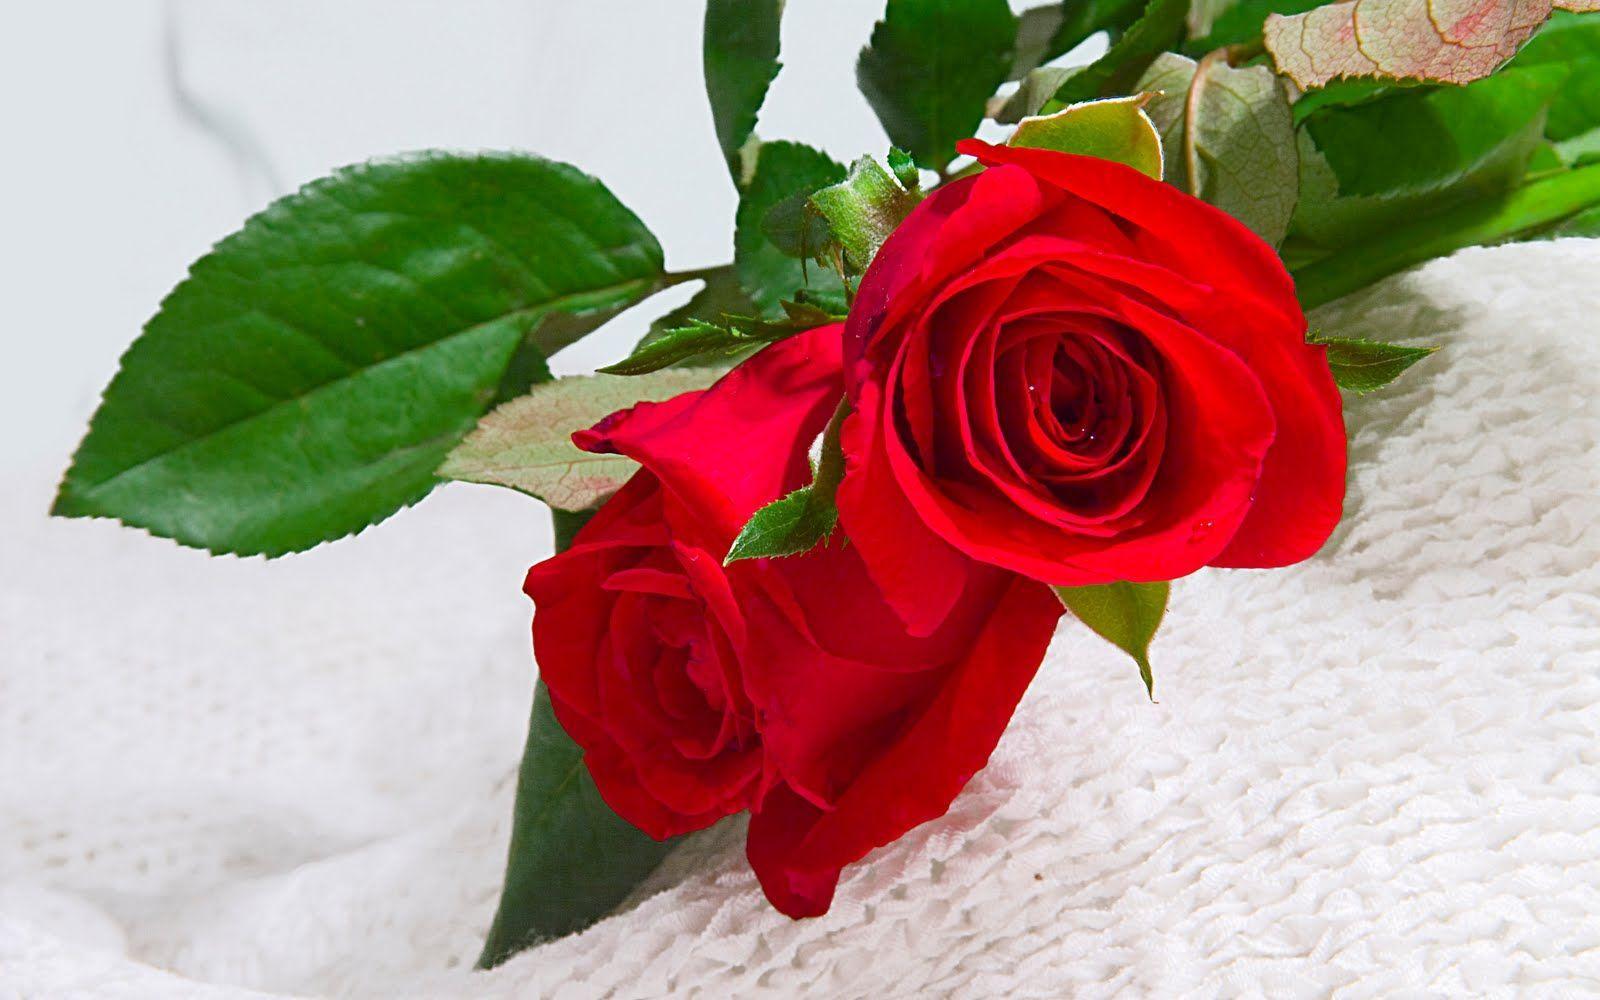 image For > Flowers Roses Wallpaper